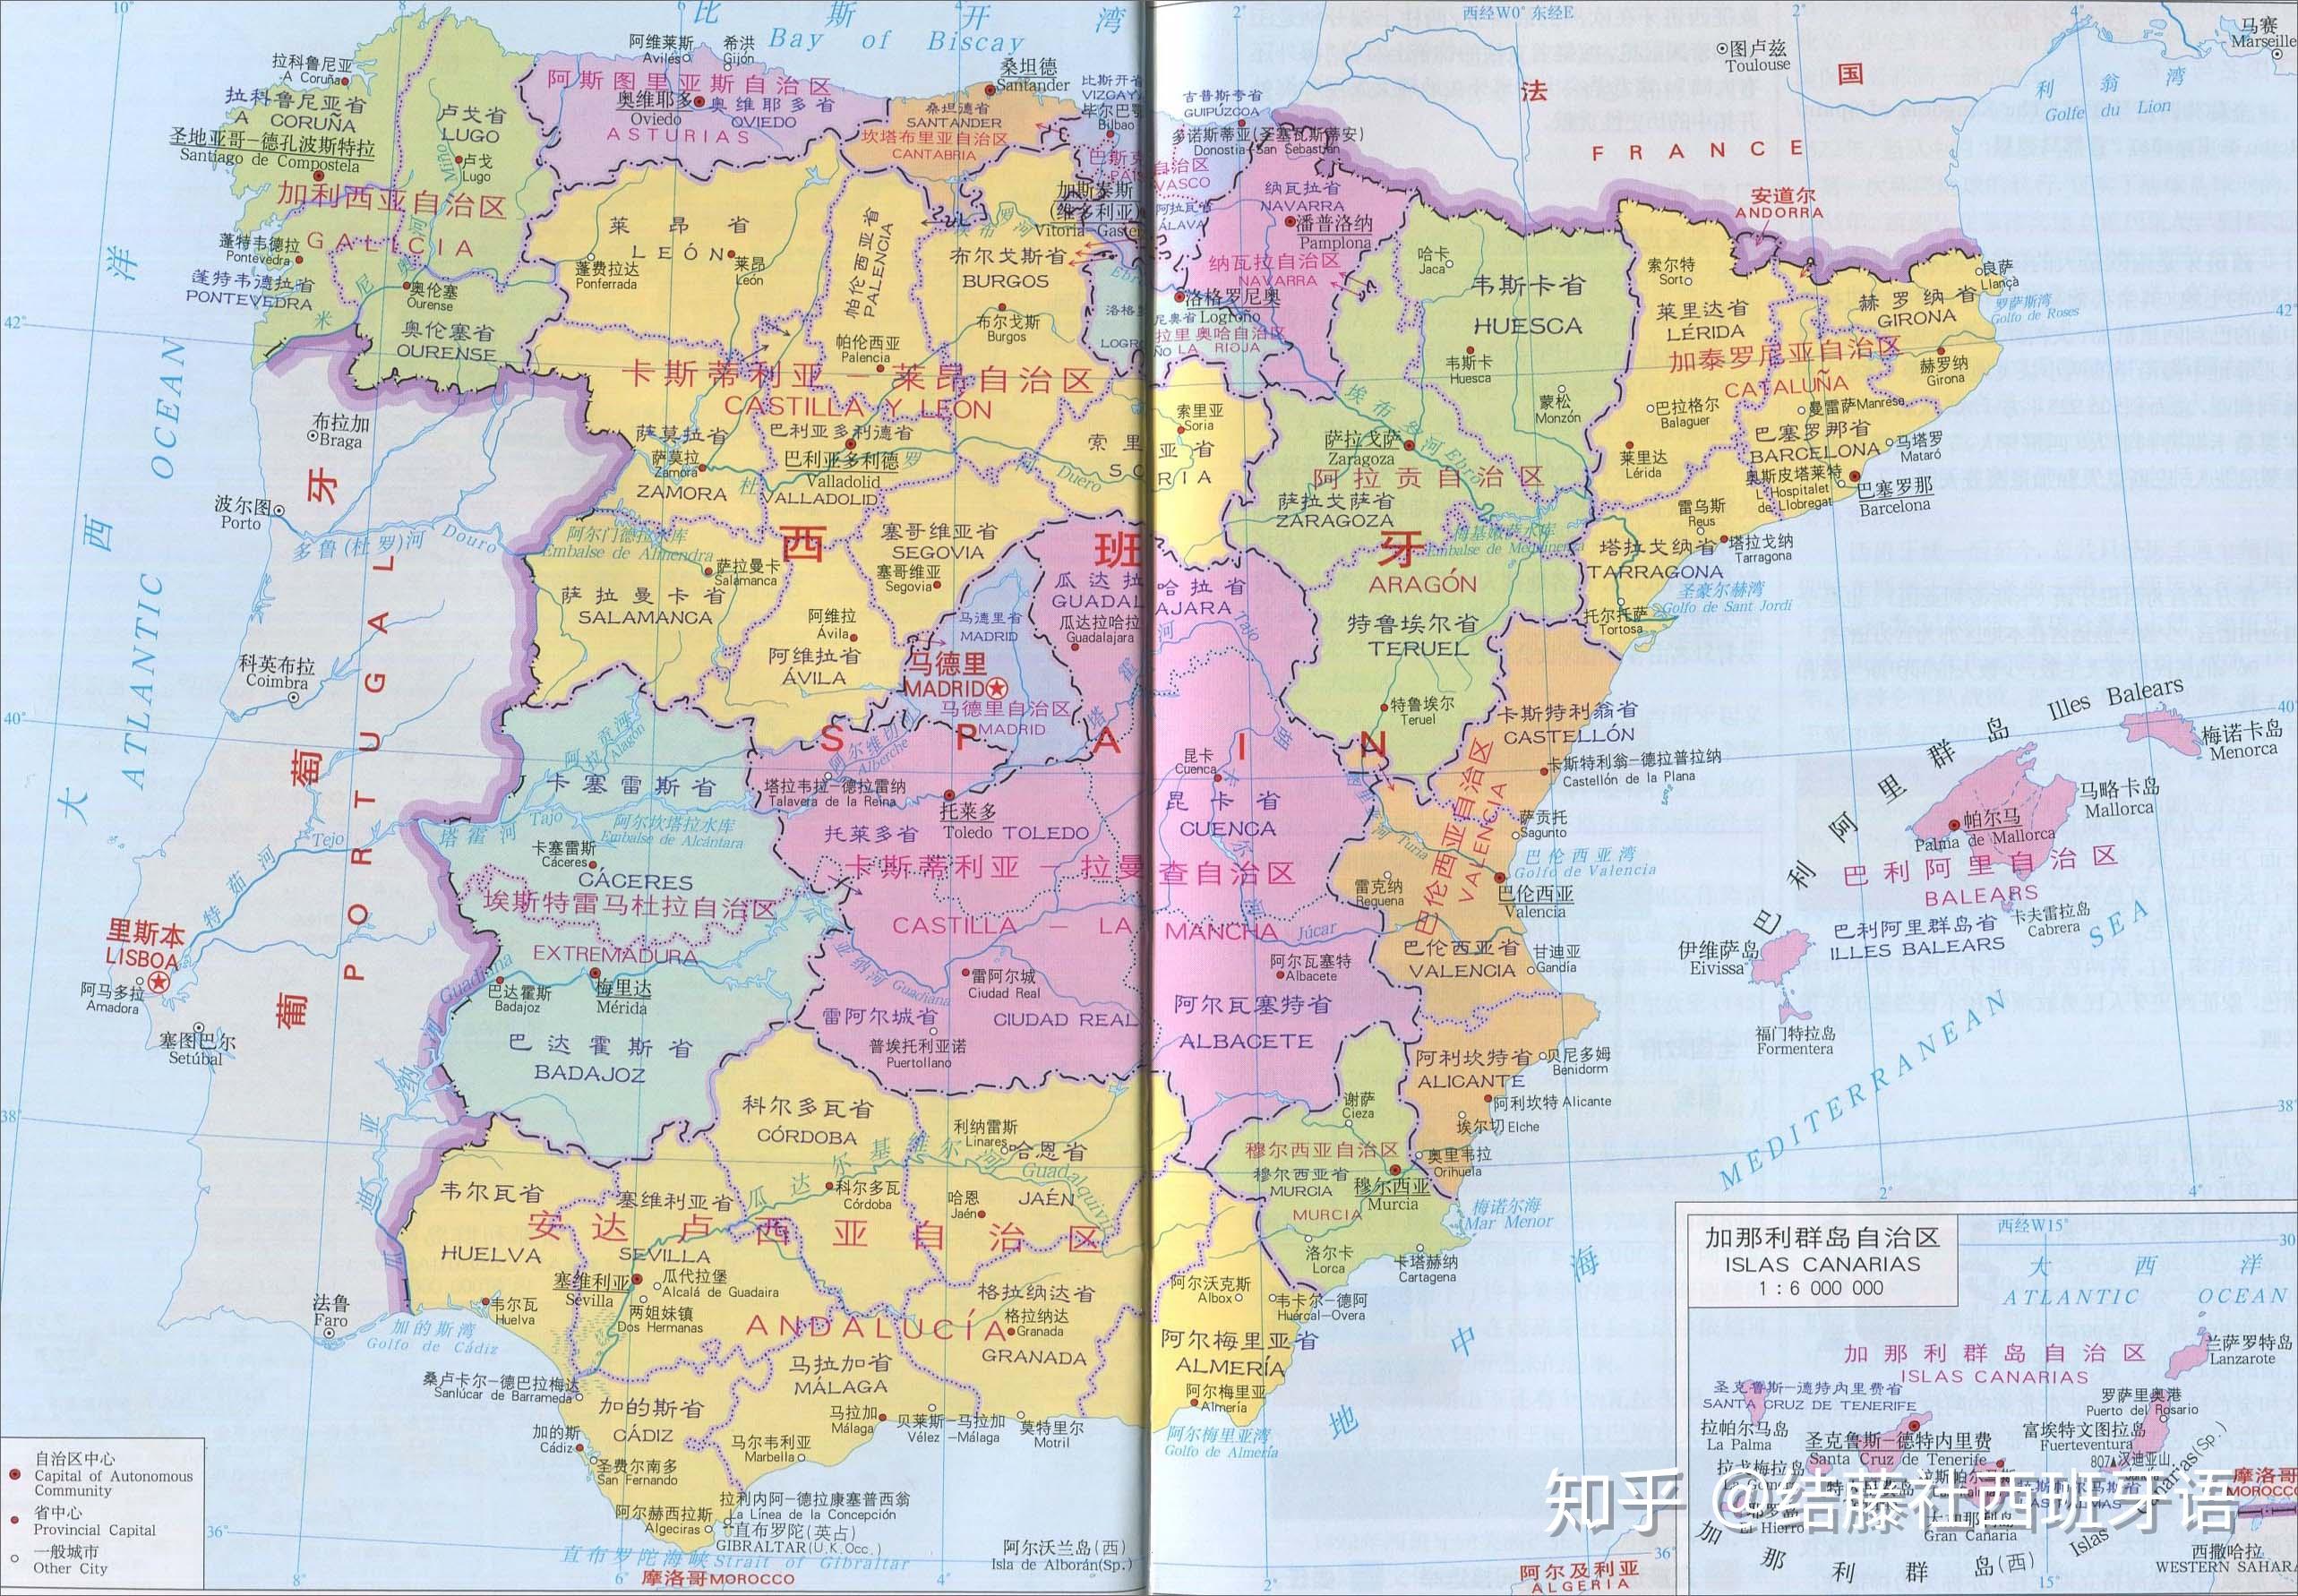 一,在视频中介绍西班牙各个自治区所在位置时用到了一系列表示方位的